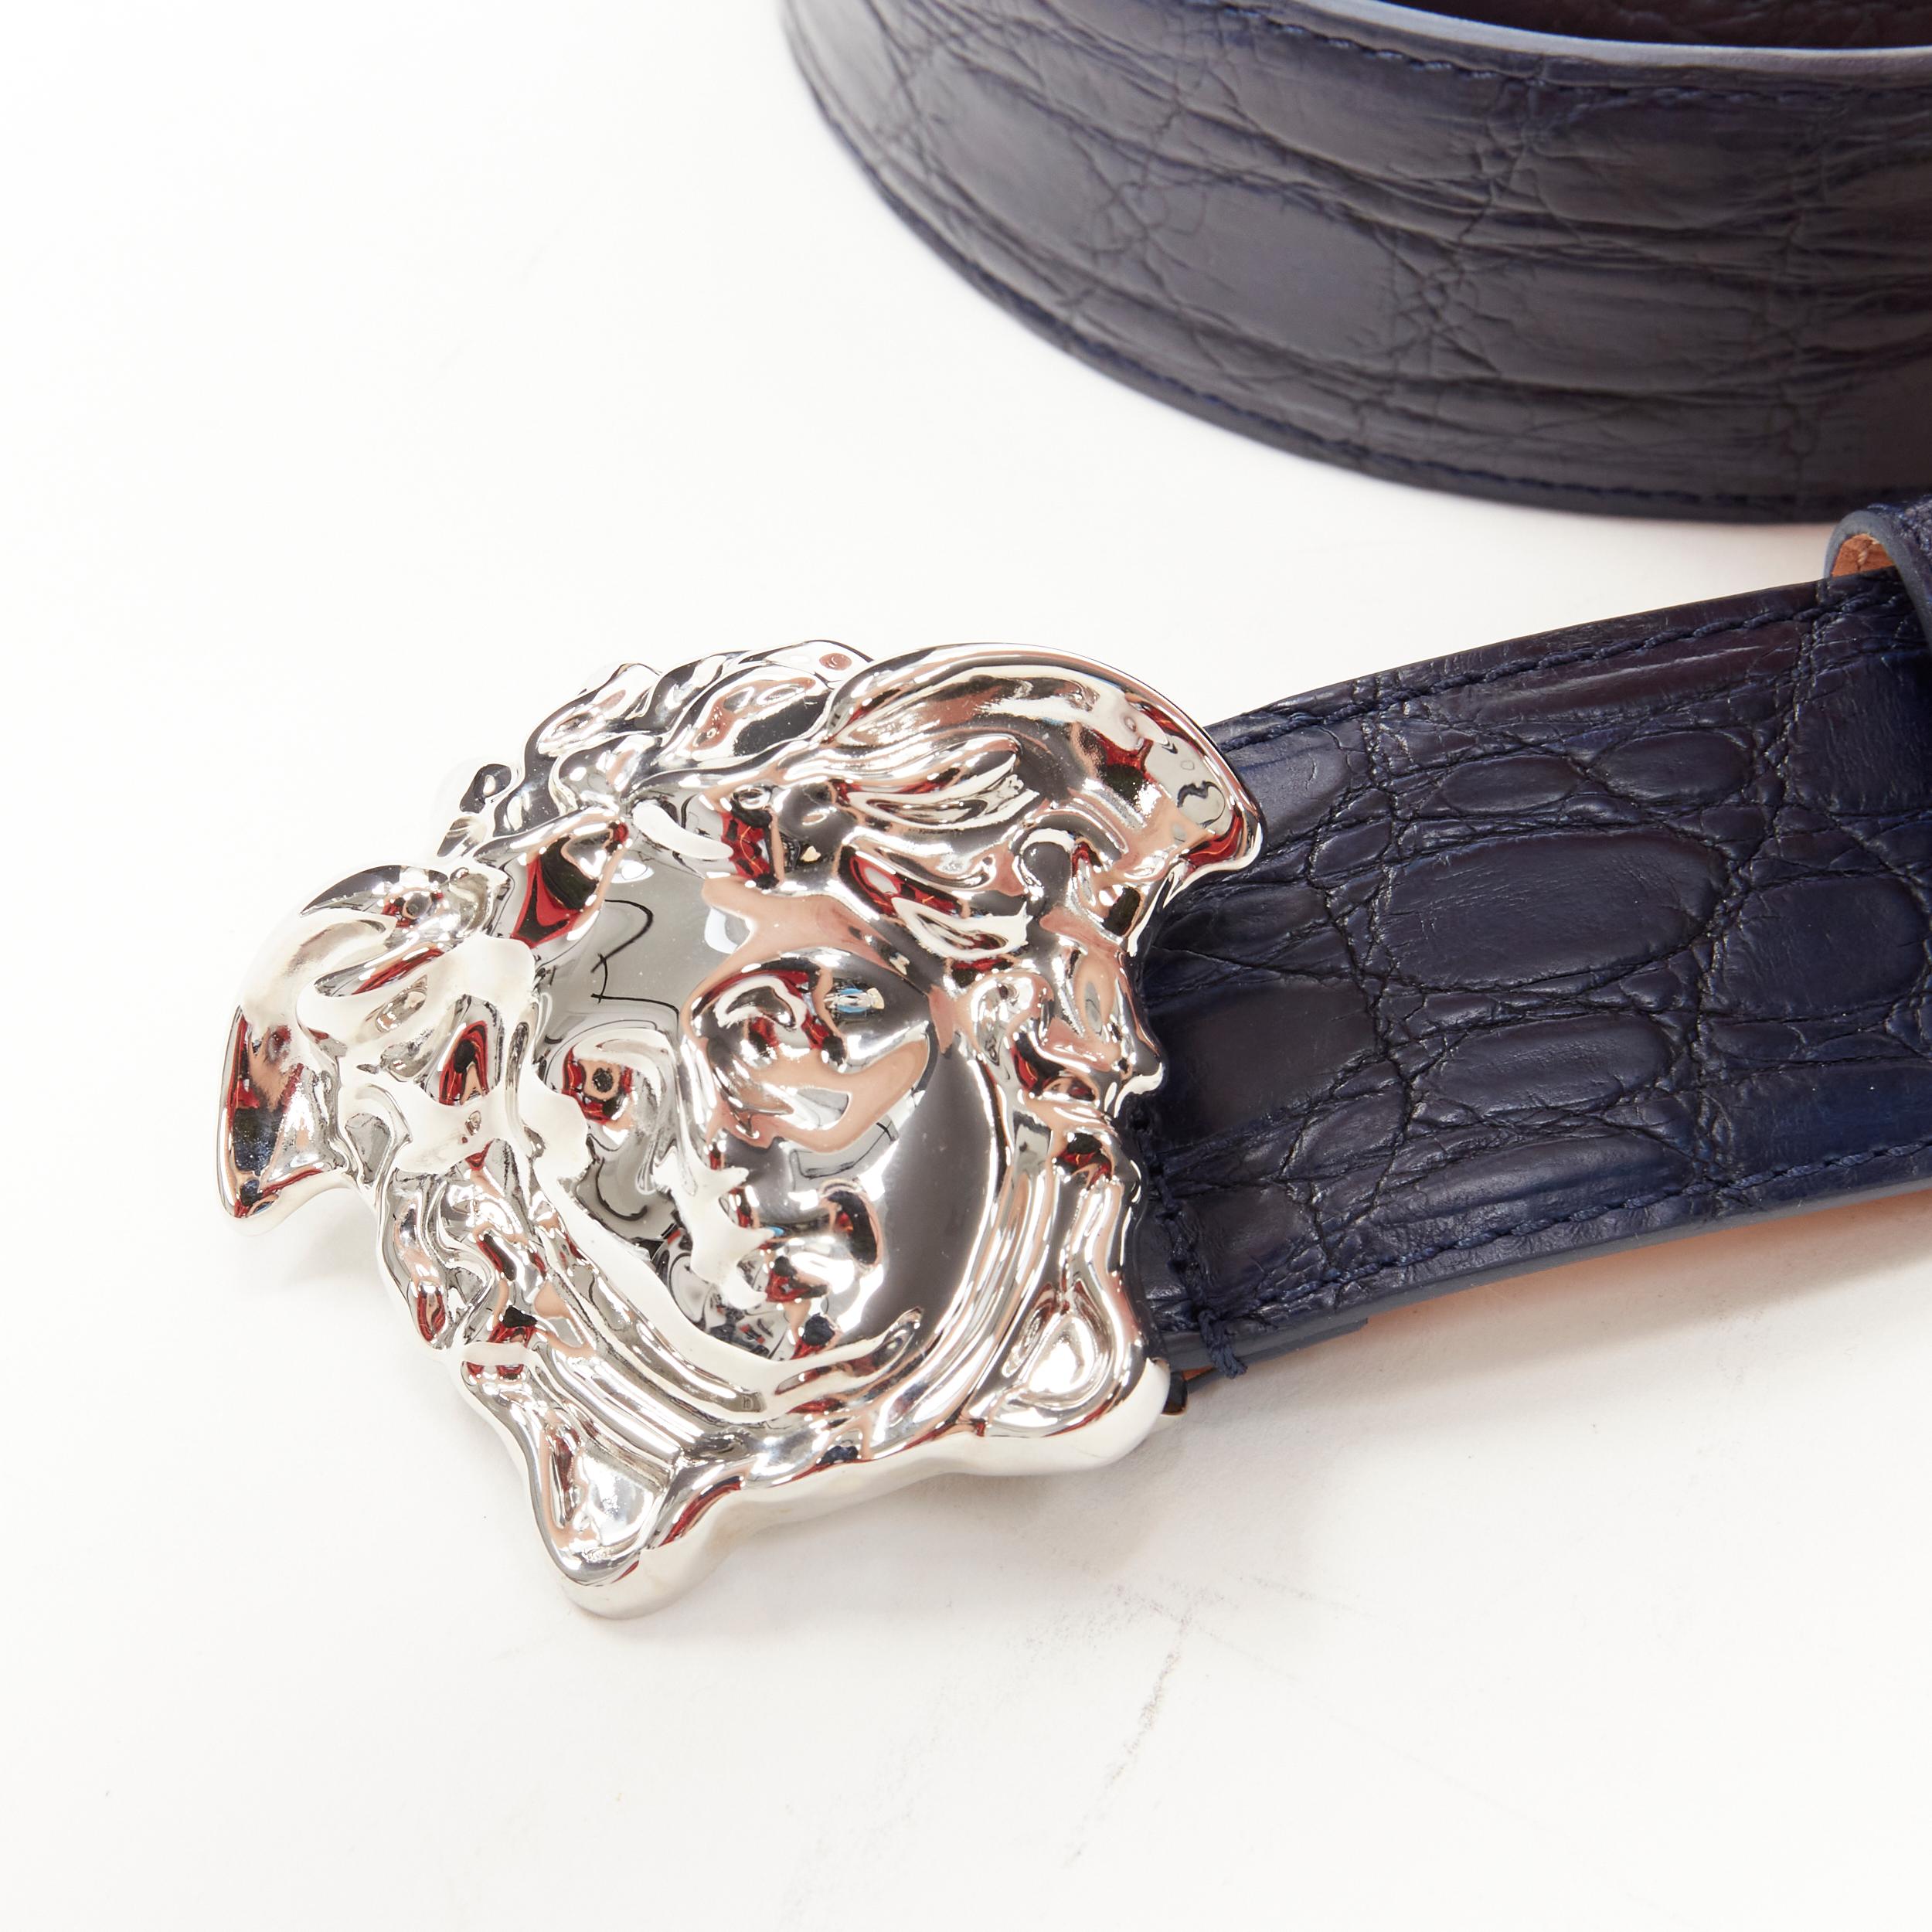 new VERSACE $1200 La Medusa silver buckle blue croc leather belt 115cm 44-48